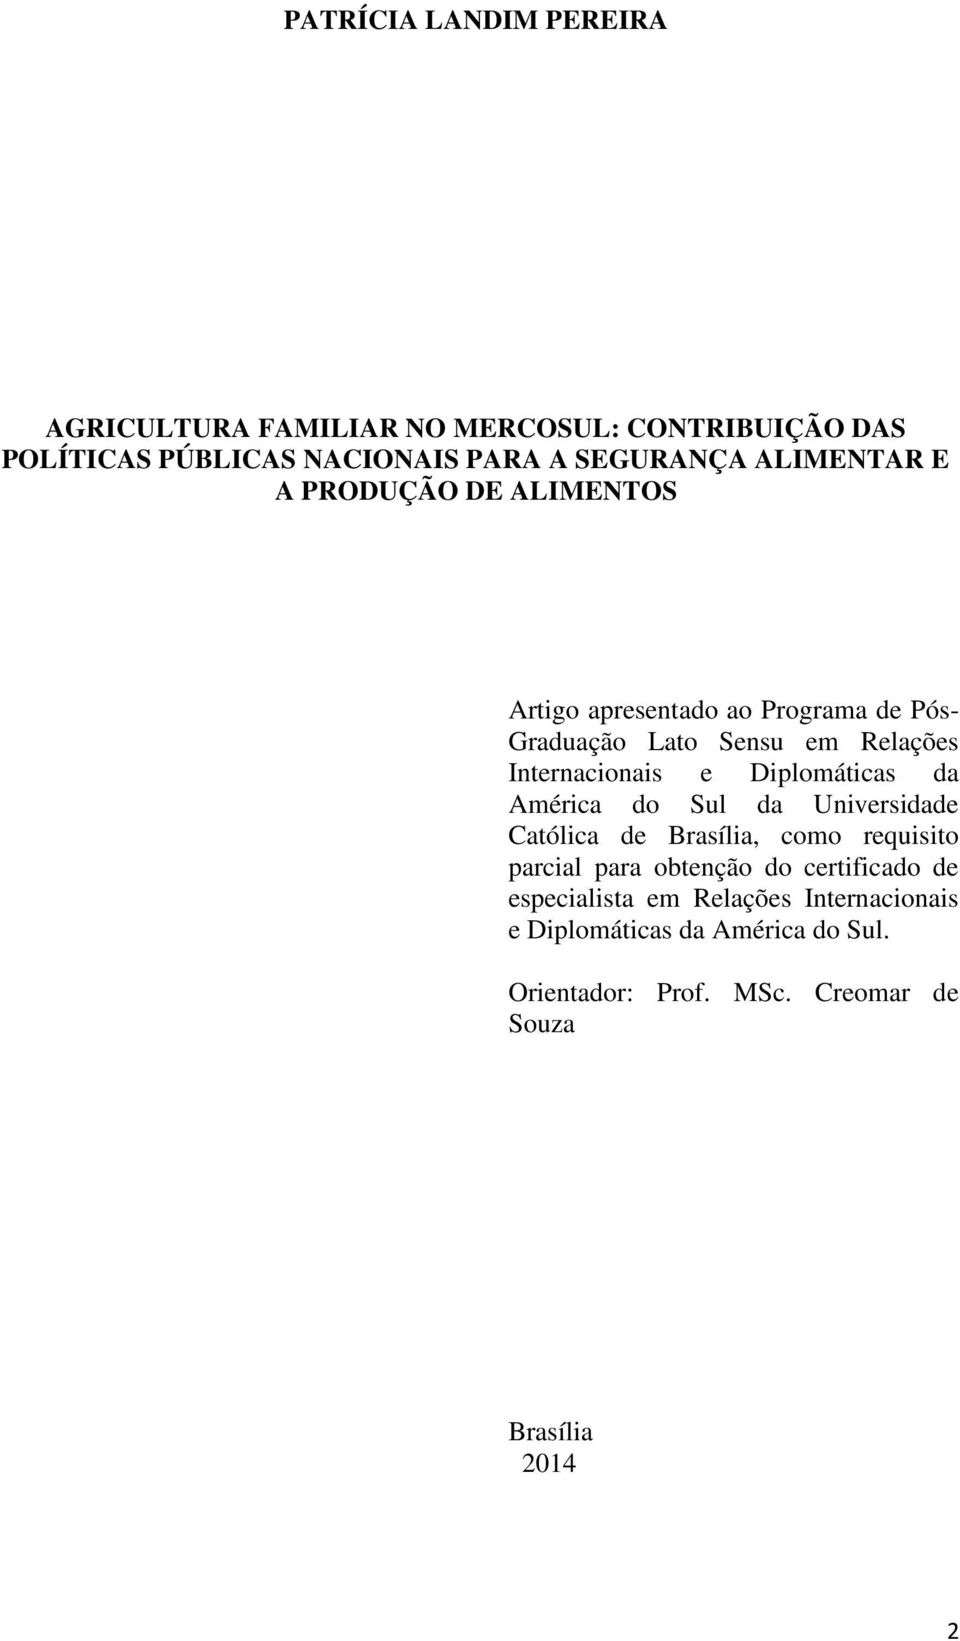 Diplomáticas da América do Sul da Universidade Católica de Brasília, como requisito parcial para obtenção do certificado de